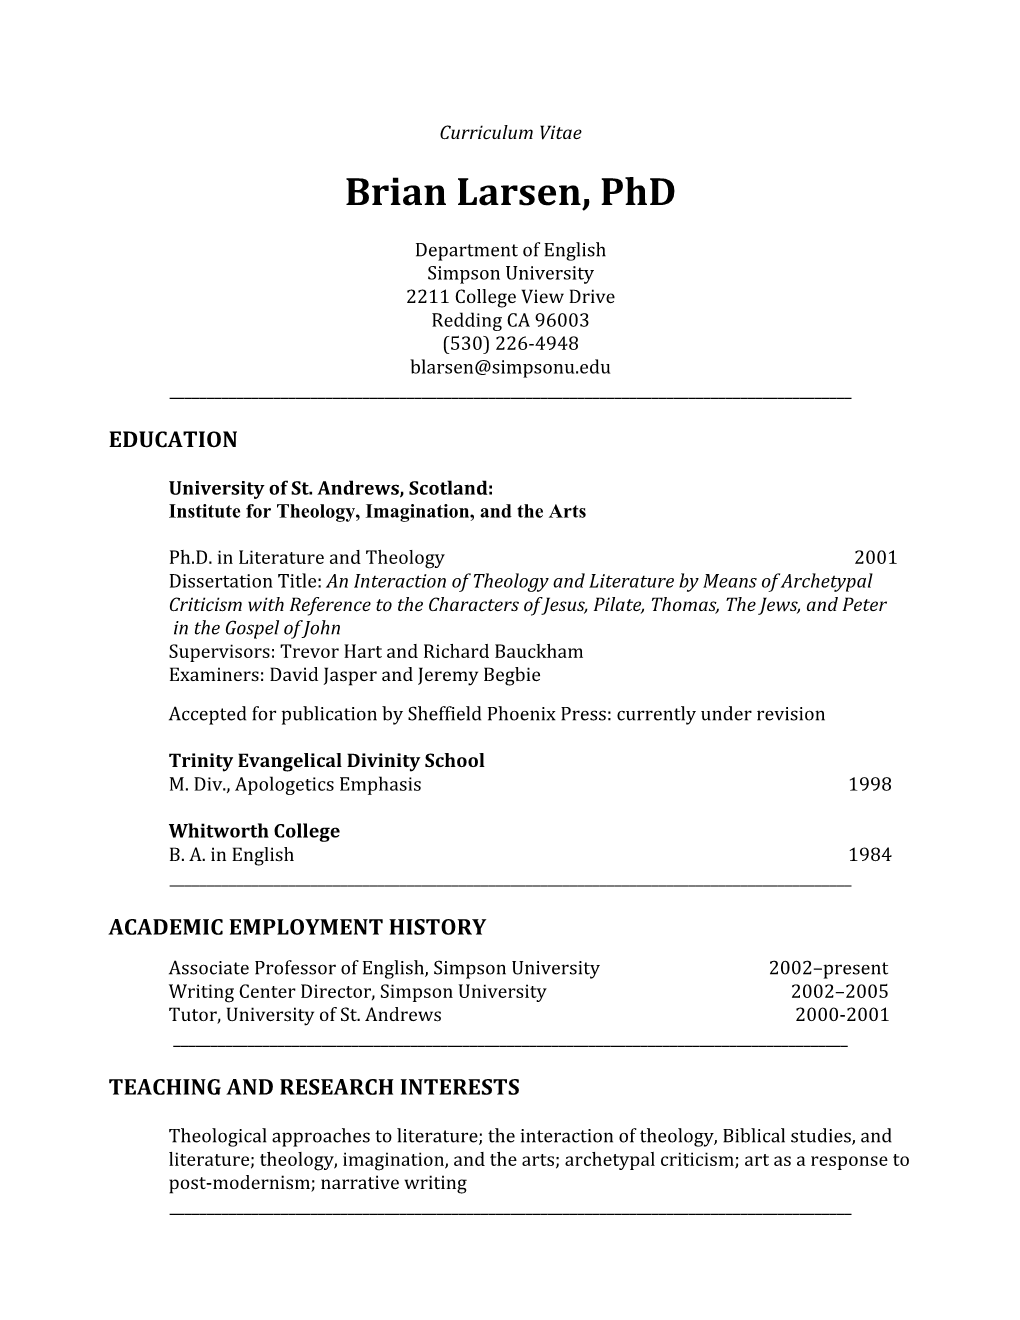 Brian Larsen, Phd